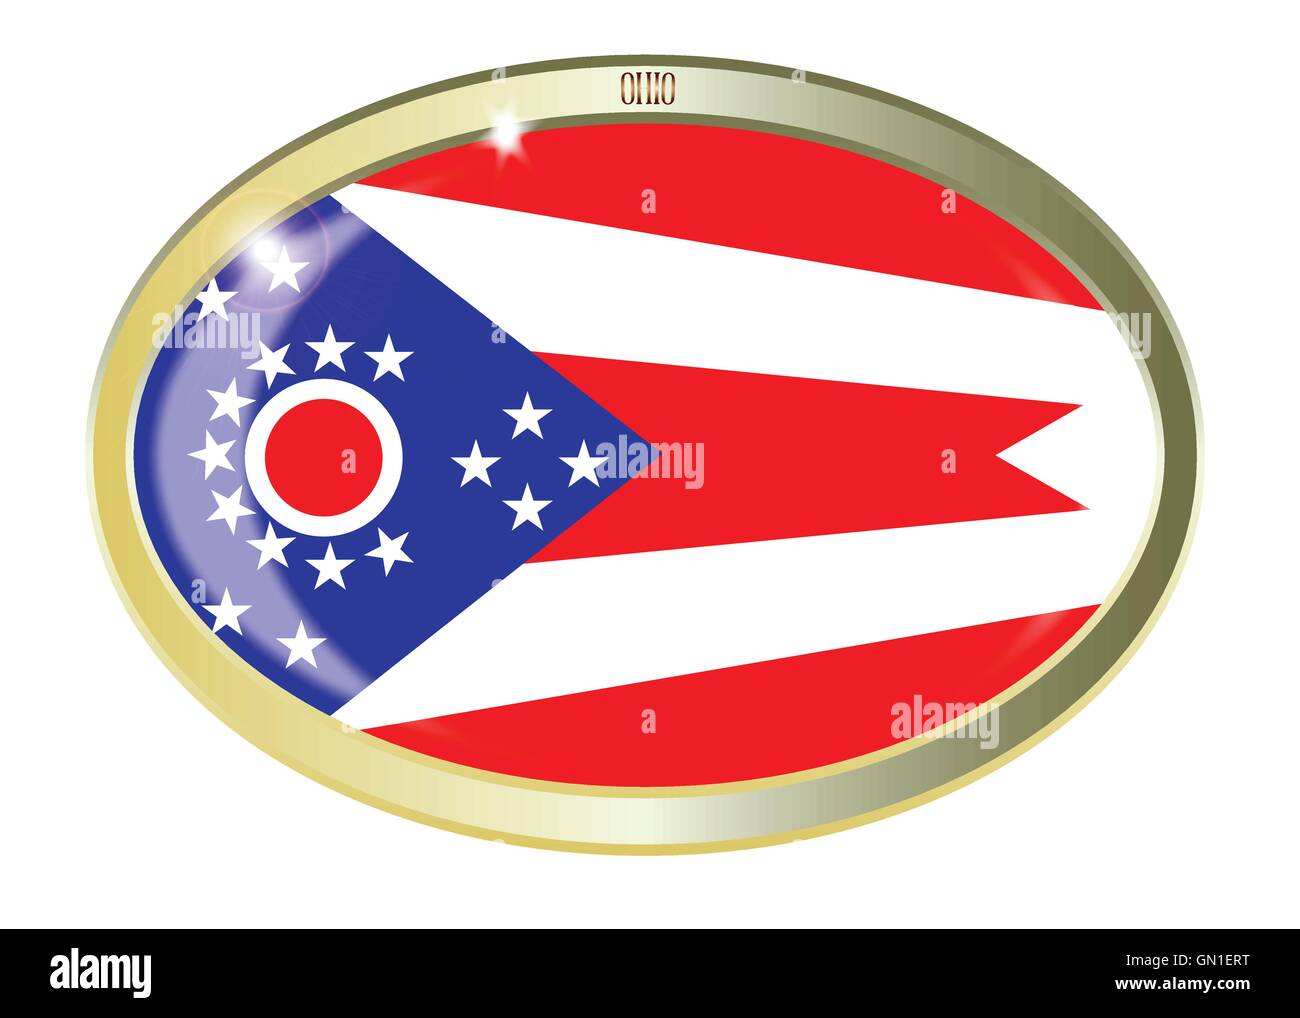 Drapeau de l'état de l'Ohio Bouton Ovale Illustration de Vecteur